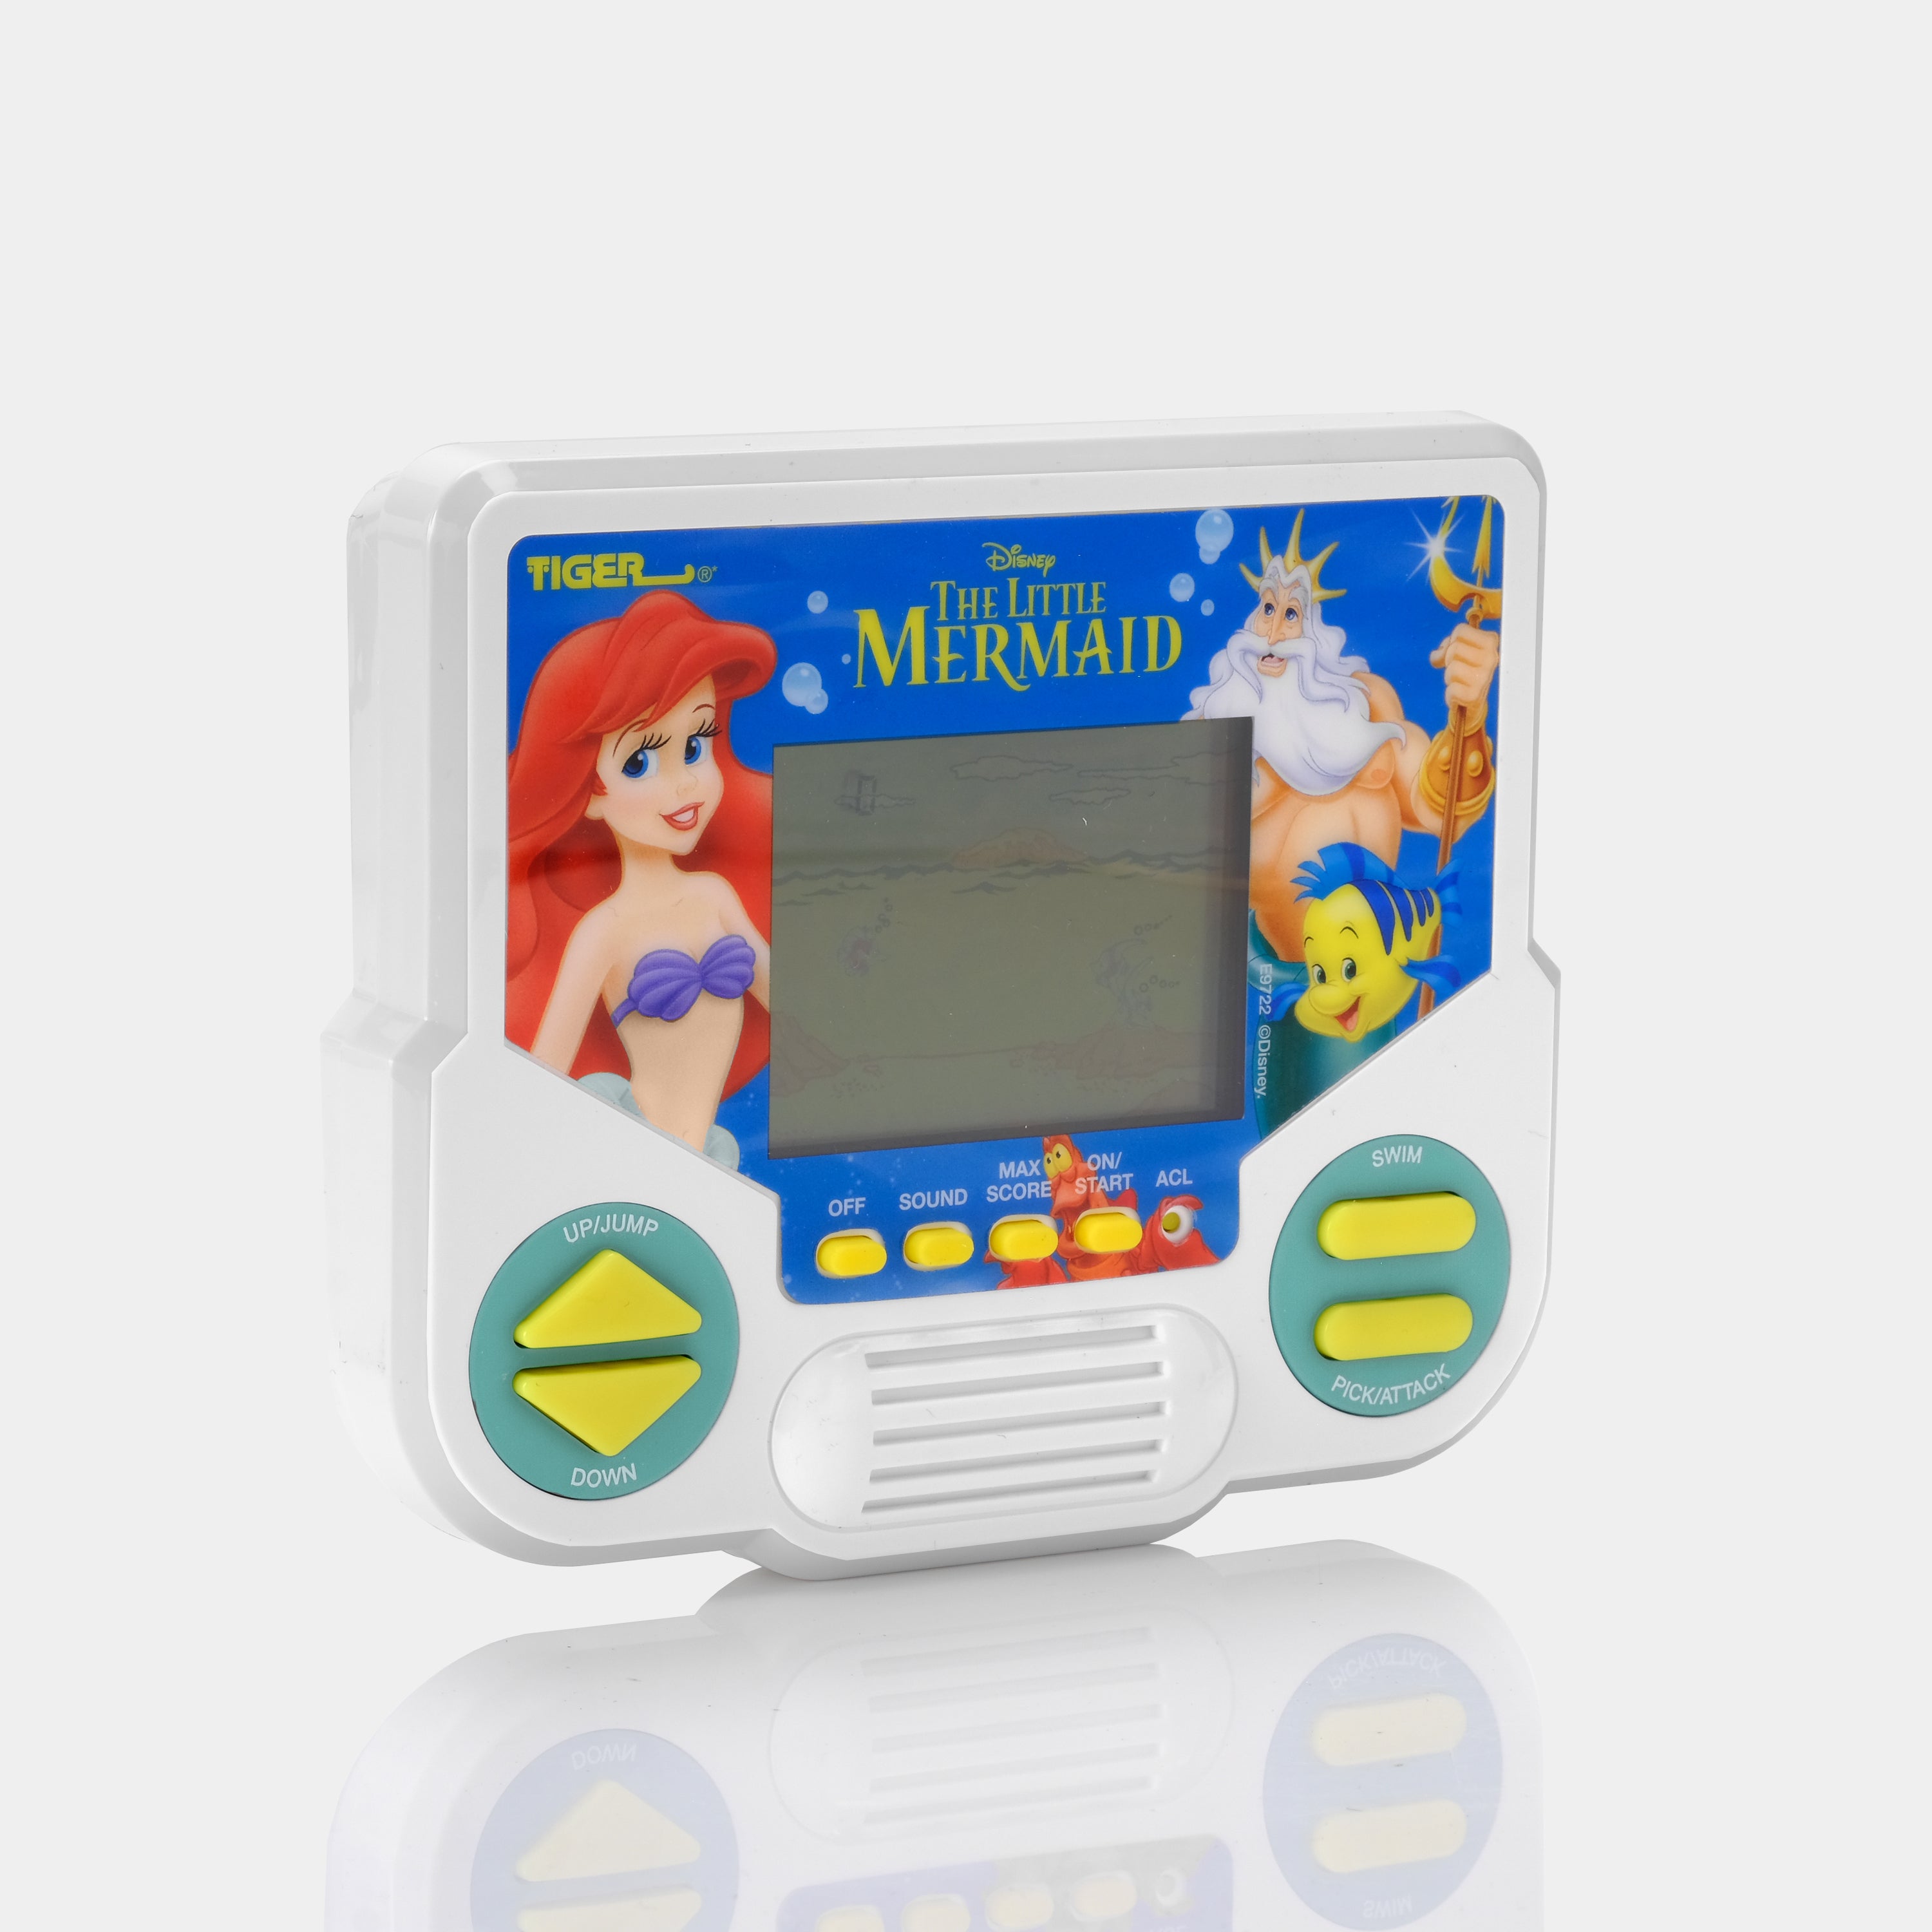 The Little Mermaid Handheld Video Game